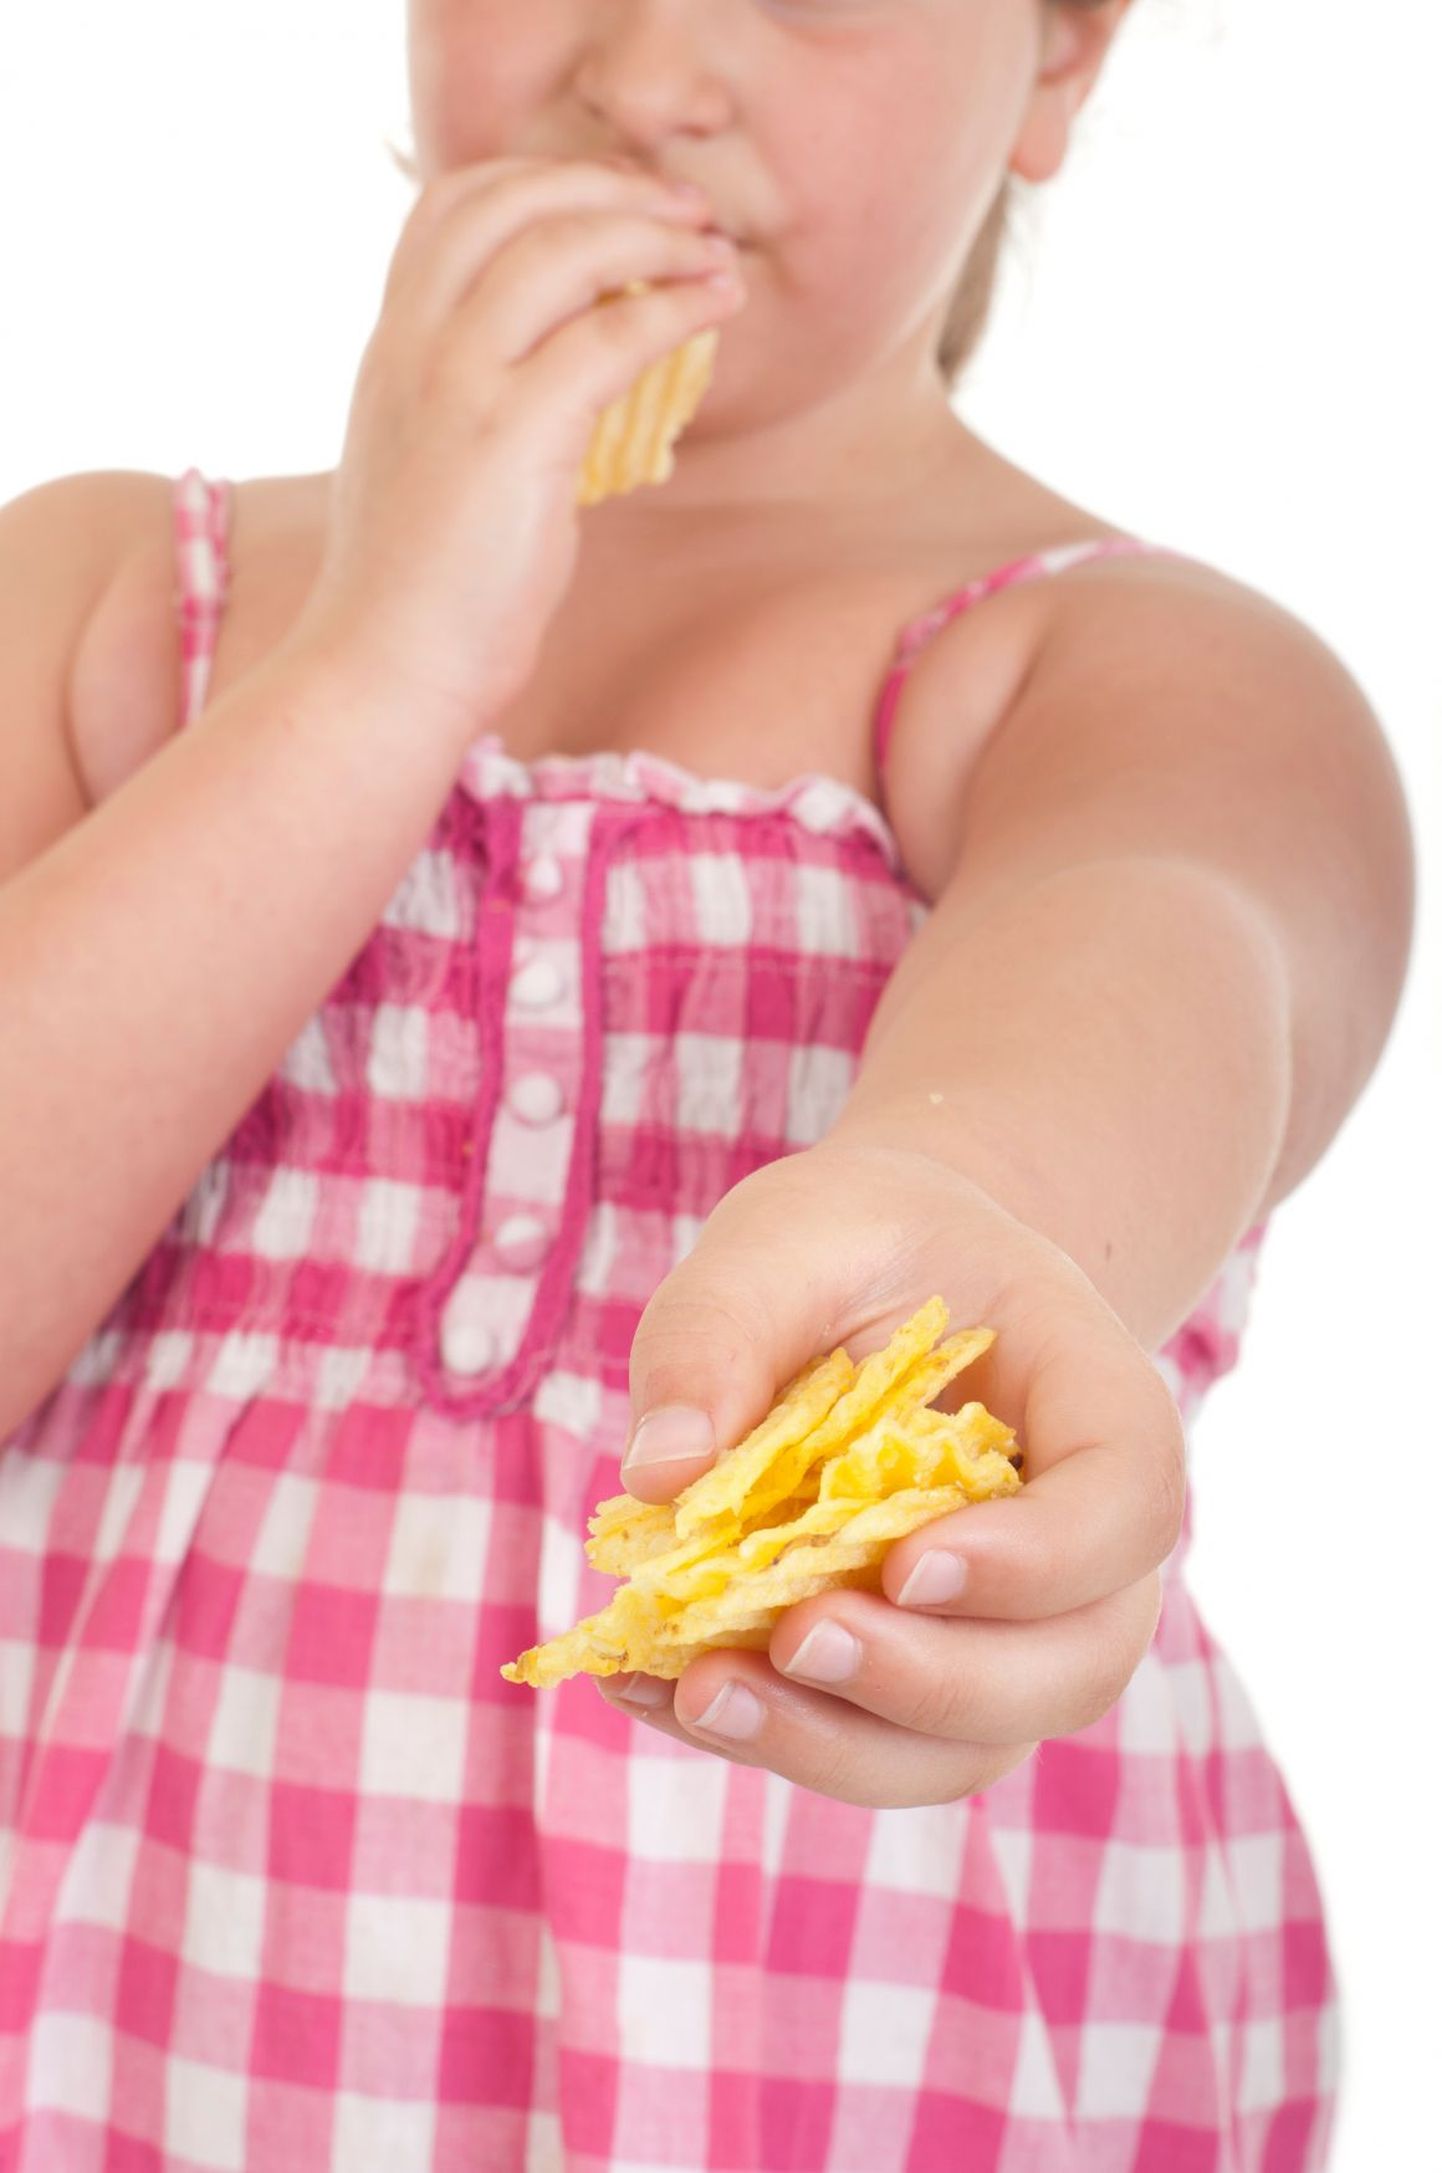 Palju ülekaalus olevatel lastel on risk südamehaigustele.